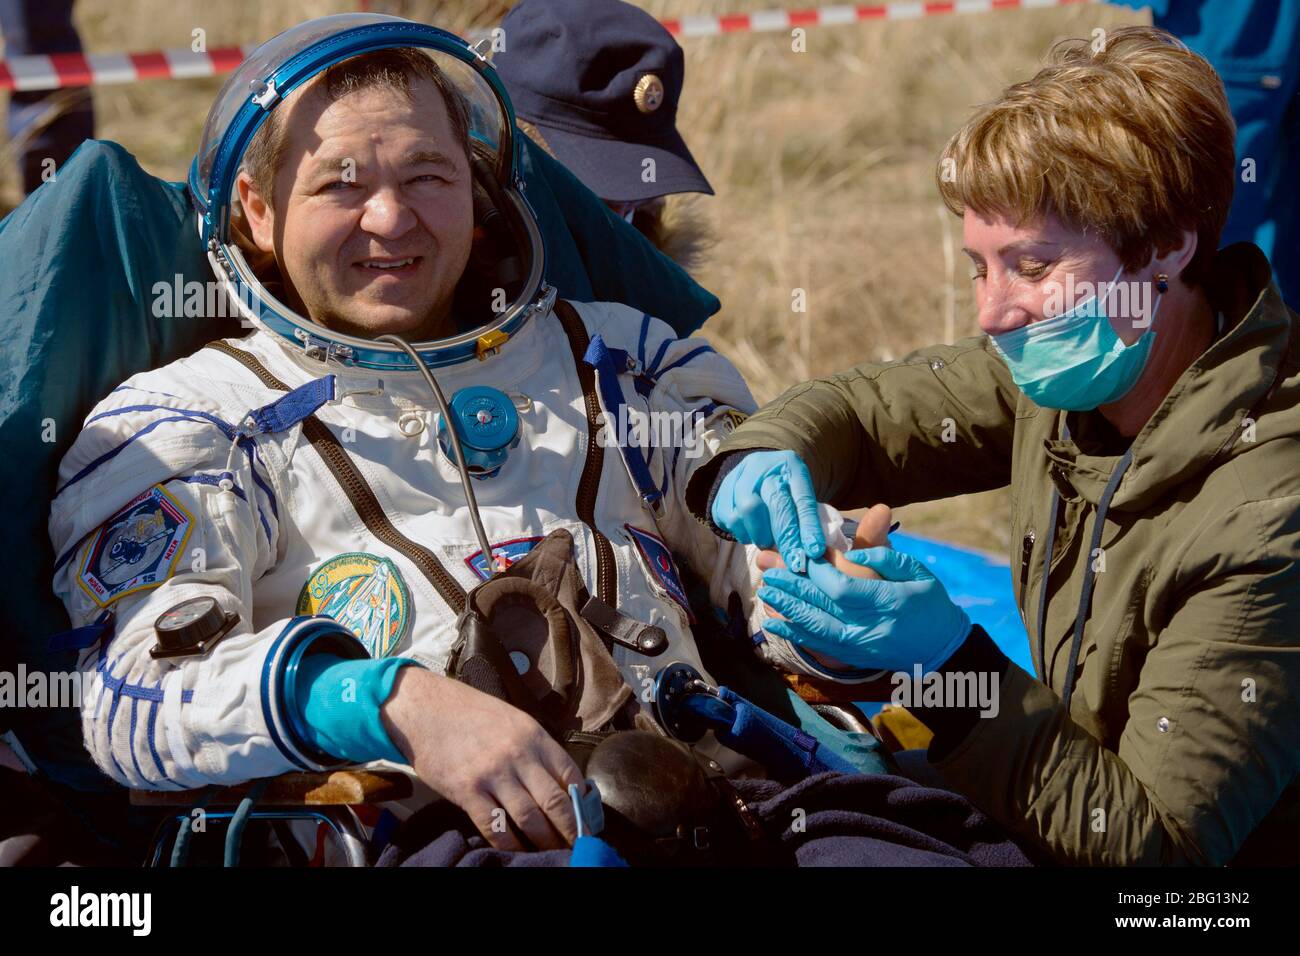 ZHEZKAZGAN, KAZAKHSTAN - 17 aprile 2020 - spedizione 62 cosmonaut Oleg Skripochka è visto al di fuori della navicella spaziale Soyuz MS-15 dopo che è atterrato con la NASA Foto Stock